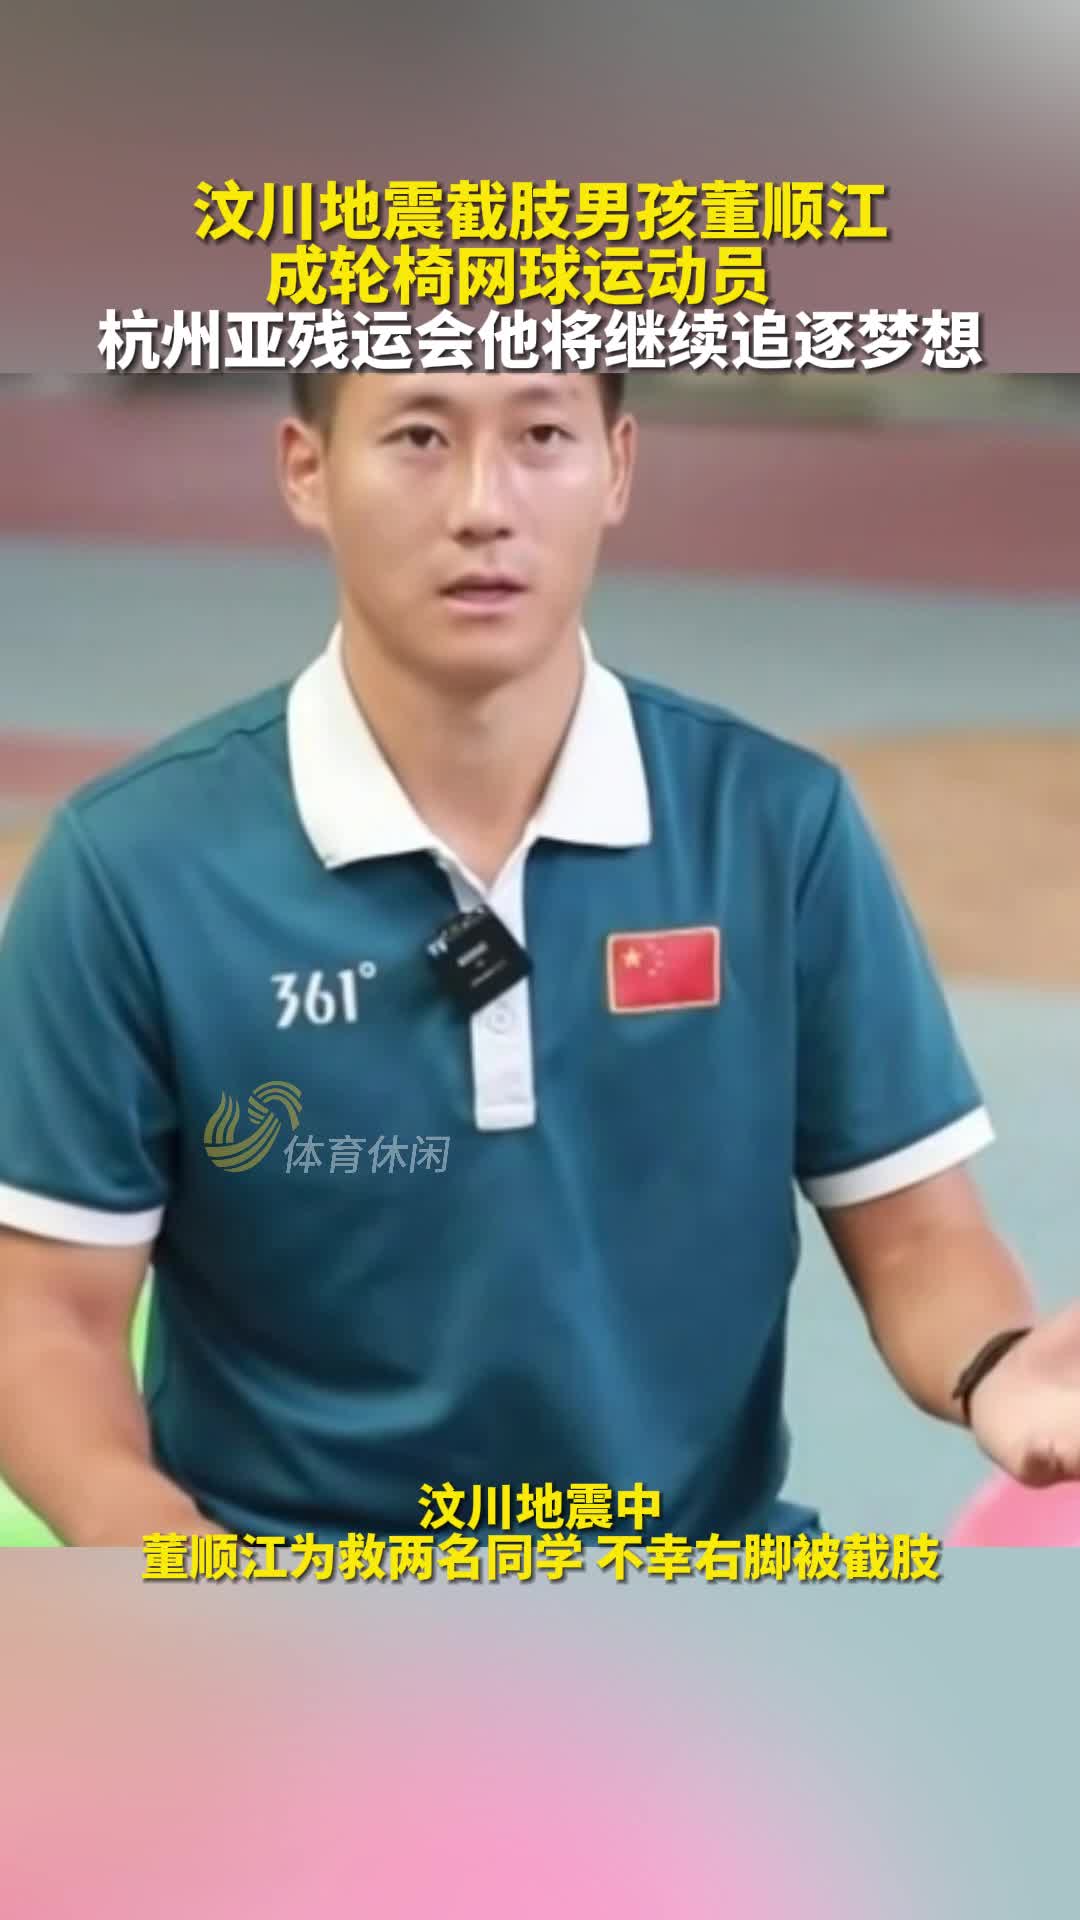 地震截肢男孩董顺江成轮椅网球运动员，亚残运会继续追逐梦想